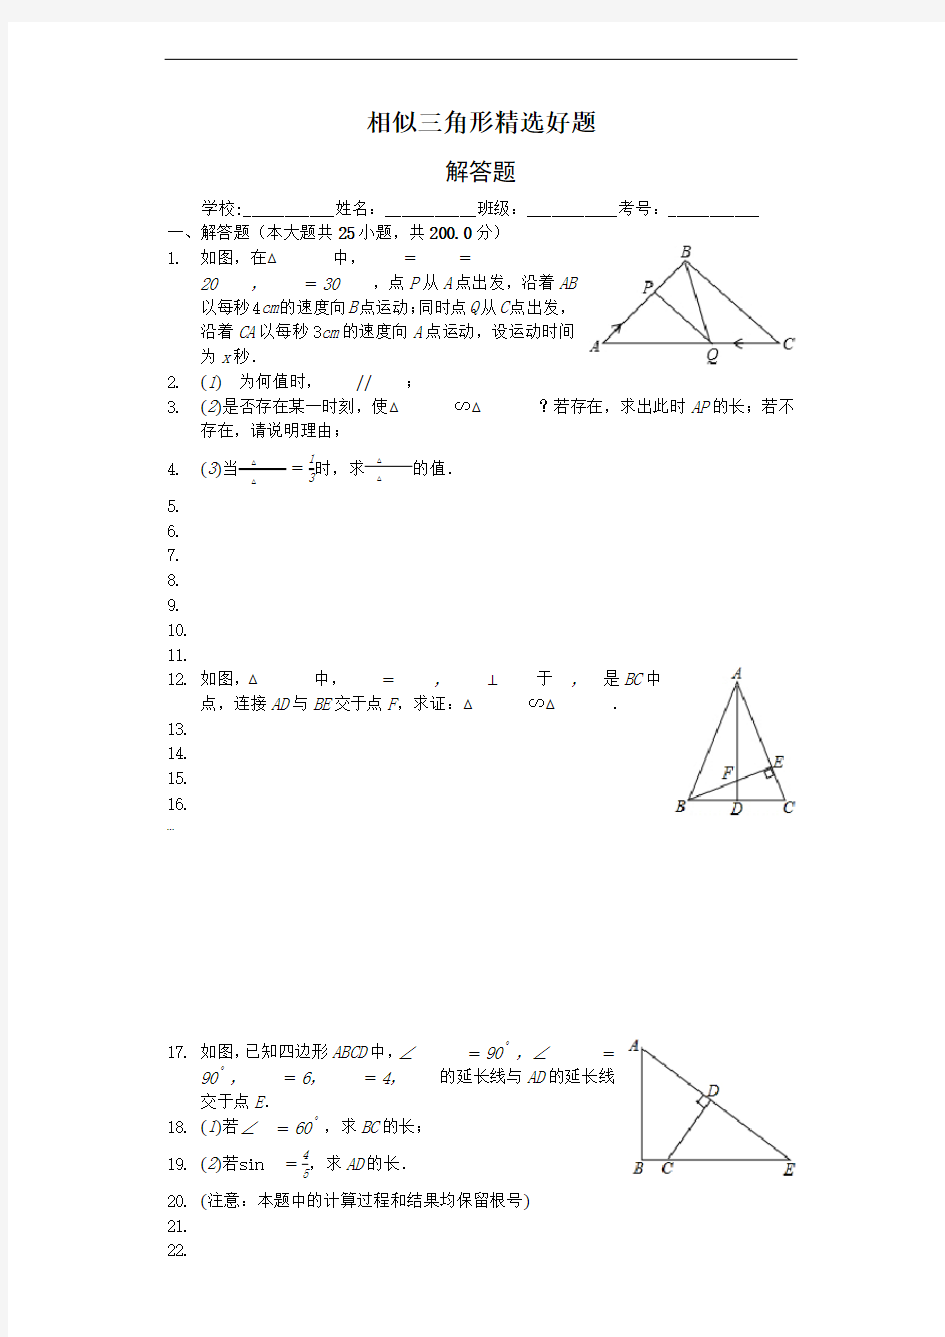 相似三角形精选好题-证明题25题